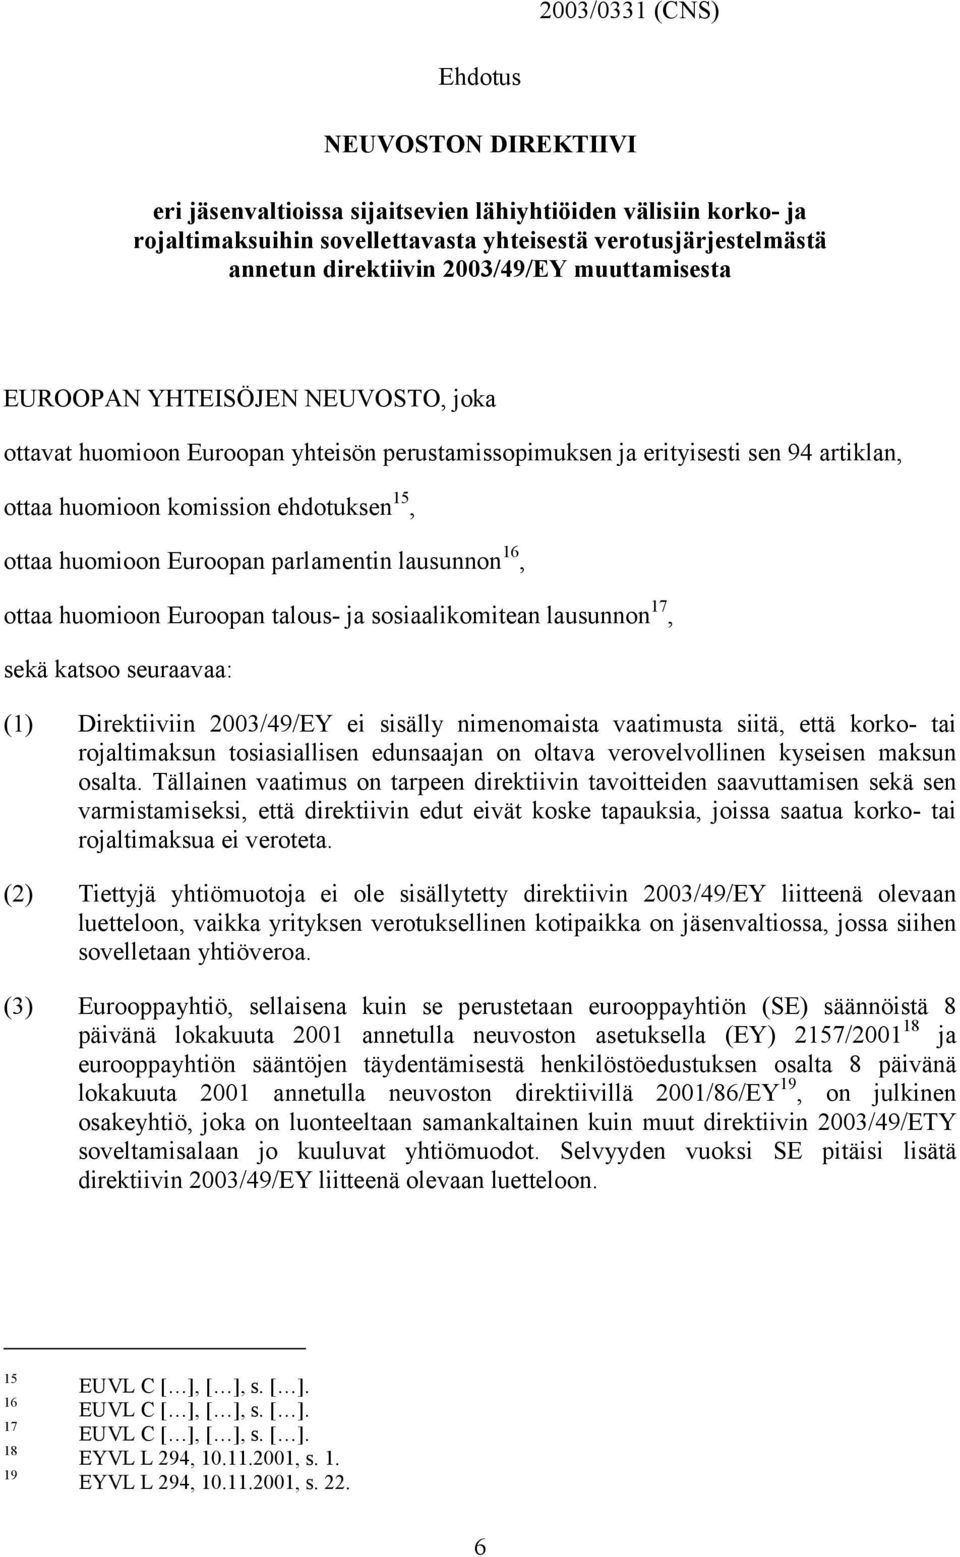 huomioon Euroopan parlamentin lausunnon 16, ottaa huomioon Euroopan talous- ja sosiaalikomitean lausunnon 17, sekä katsoo seuraavaa: (1) Direktiiviin 2003/49/EY ei sisälly nimenomaista vaatimusta